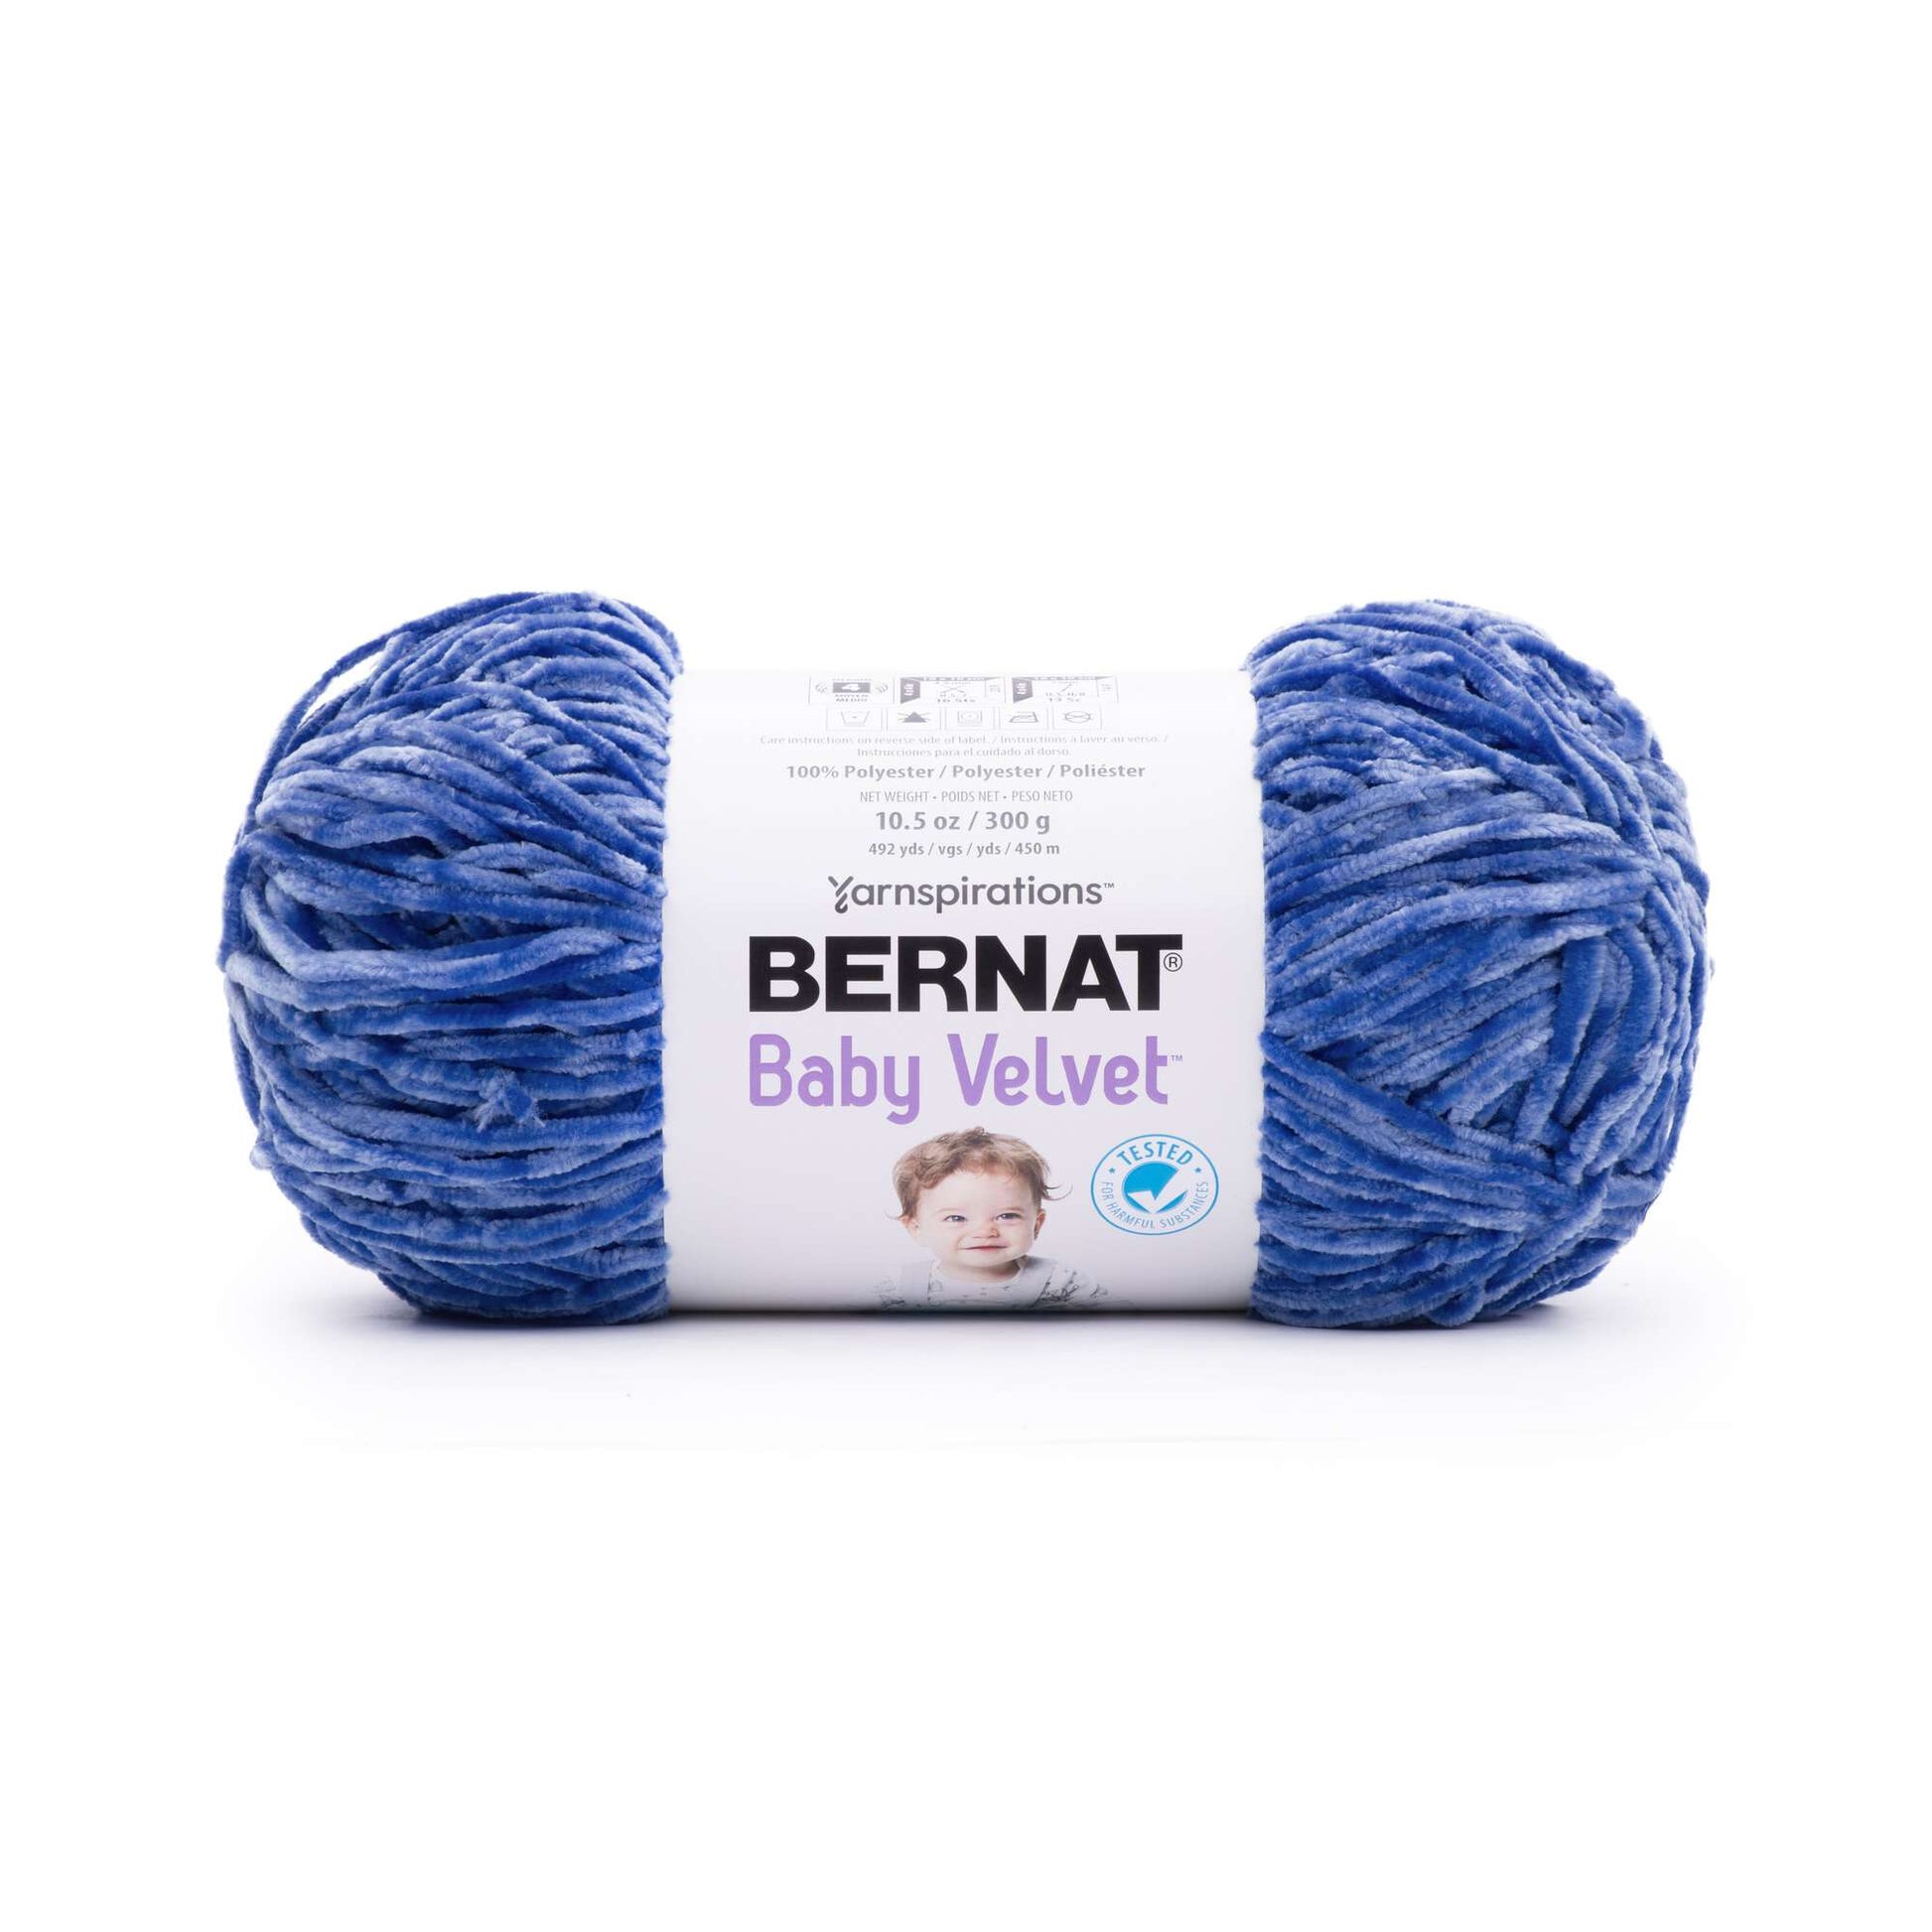 Bernat Baby Yarn Bernat Baby Velvet Yarn - 3.5 Oz, Sky Blue - 3 Pack Bundle  with Bella's Crafts Stitch Markers